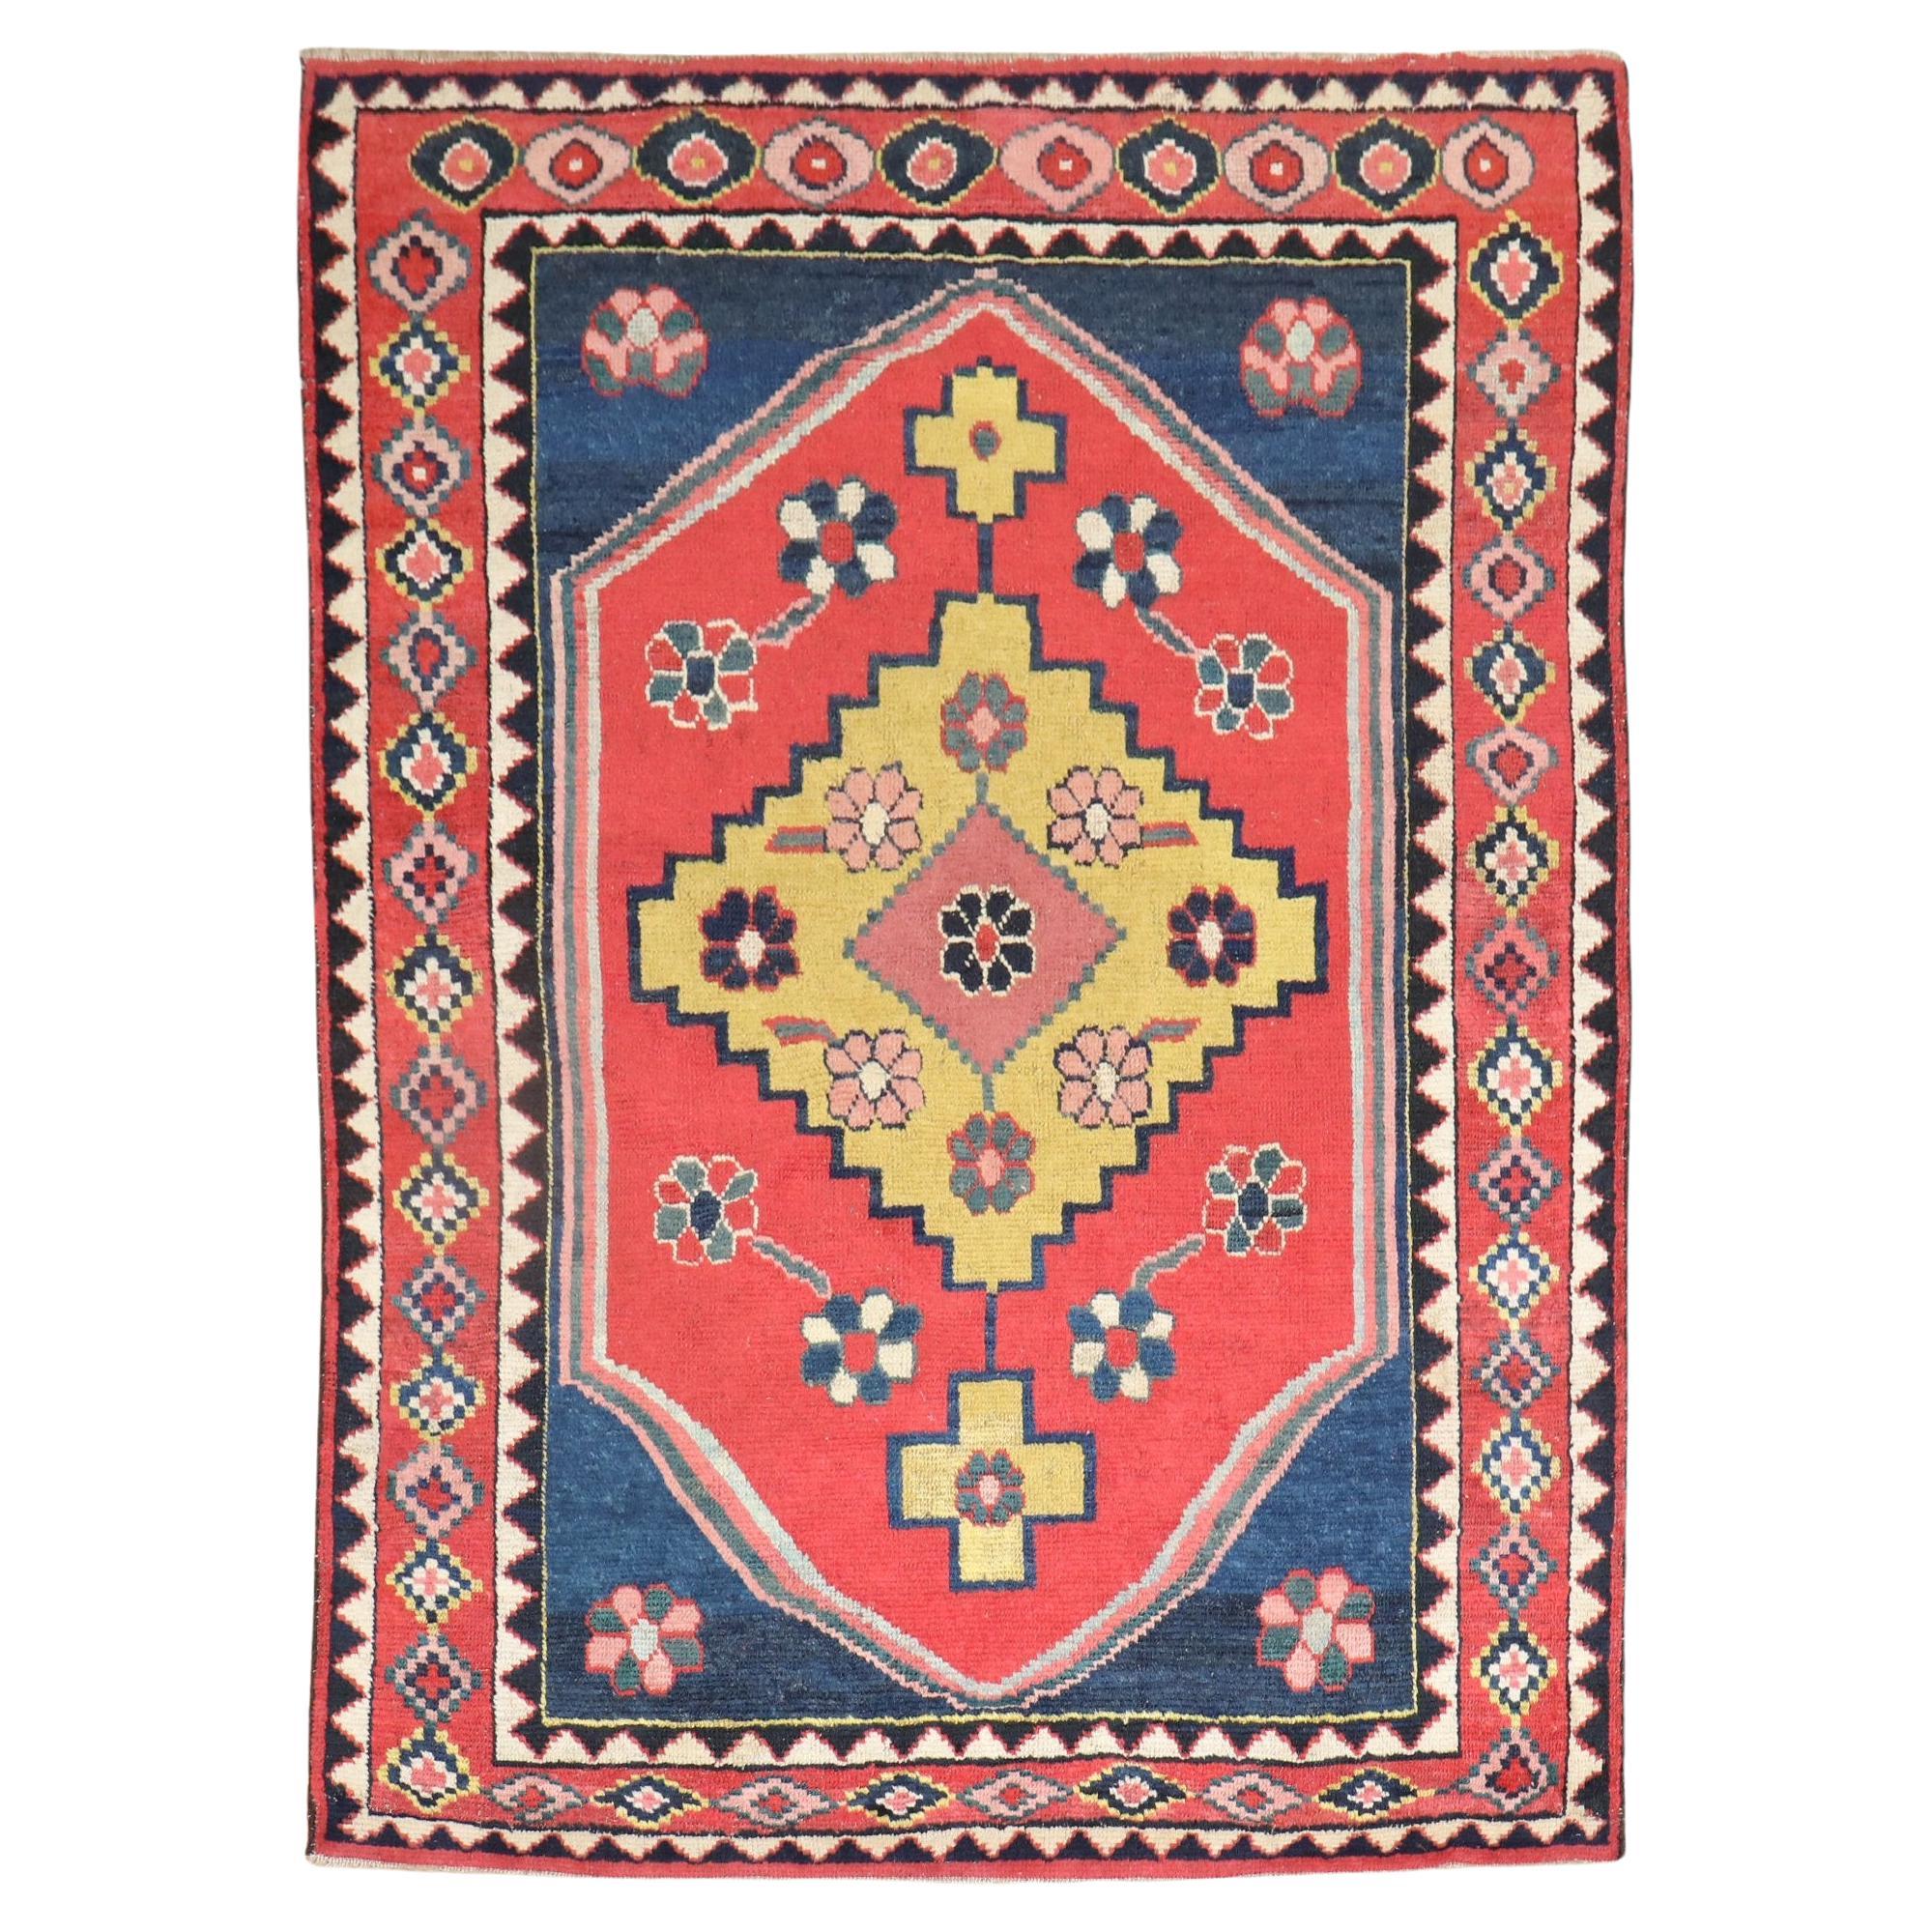 Bunter quadratischer Gabbeh-Teppich im Vintage-Stil aus Persien